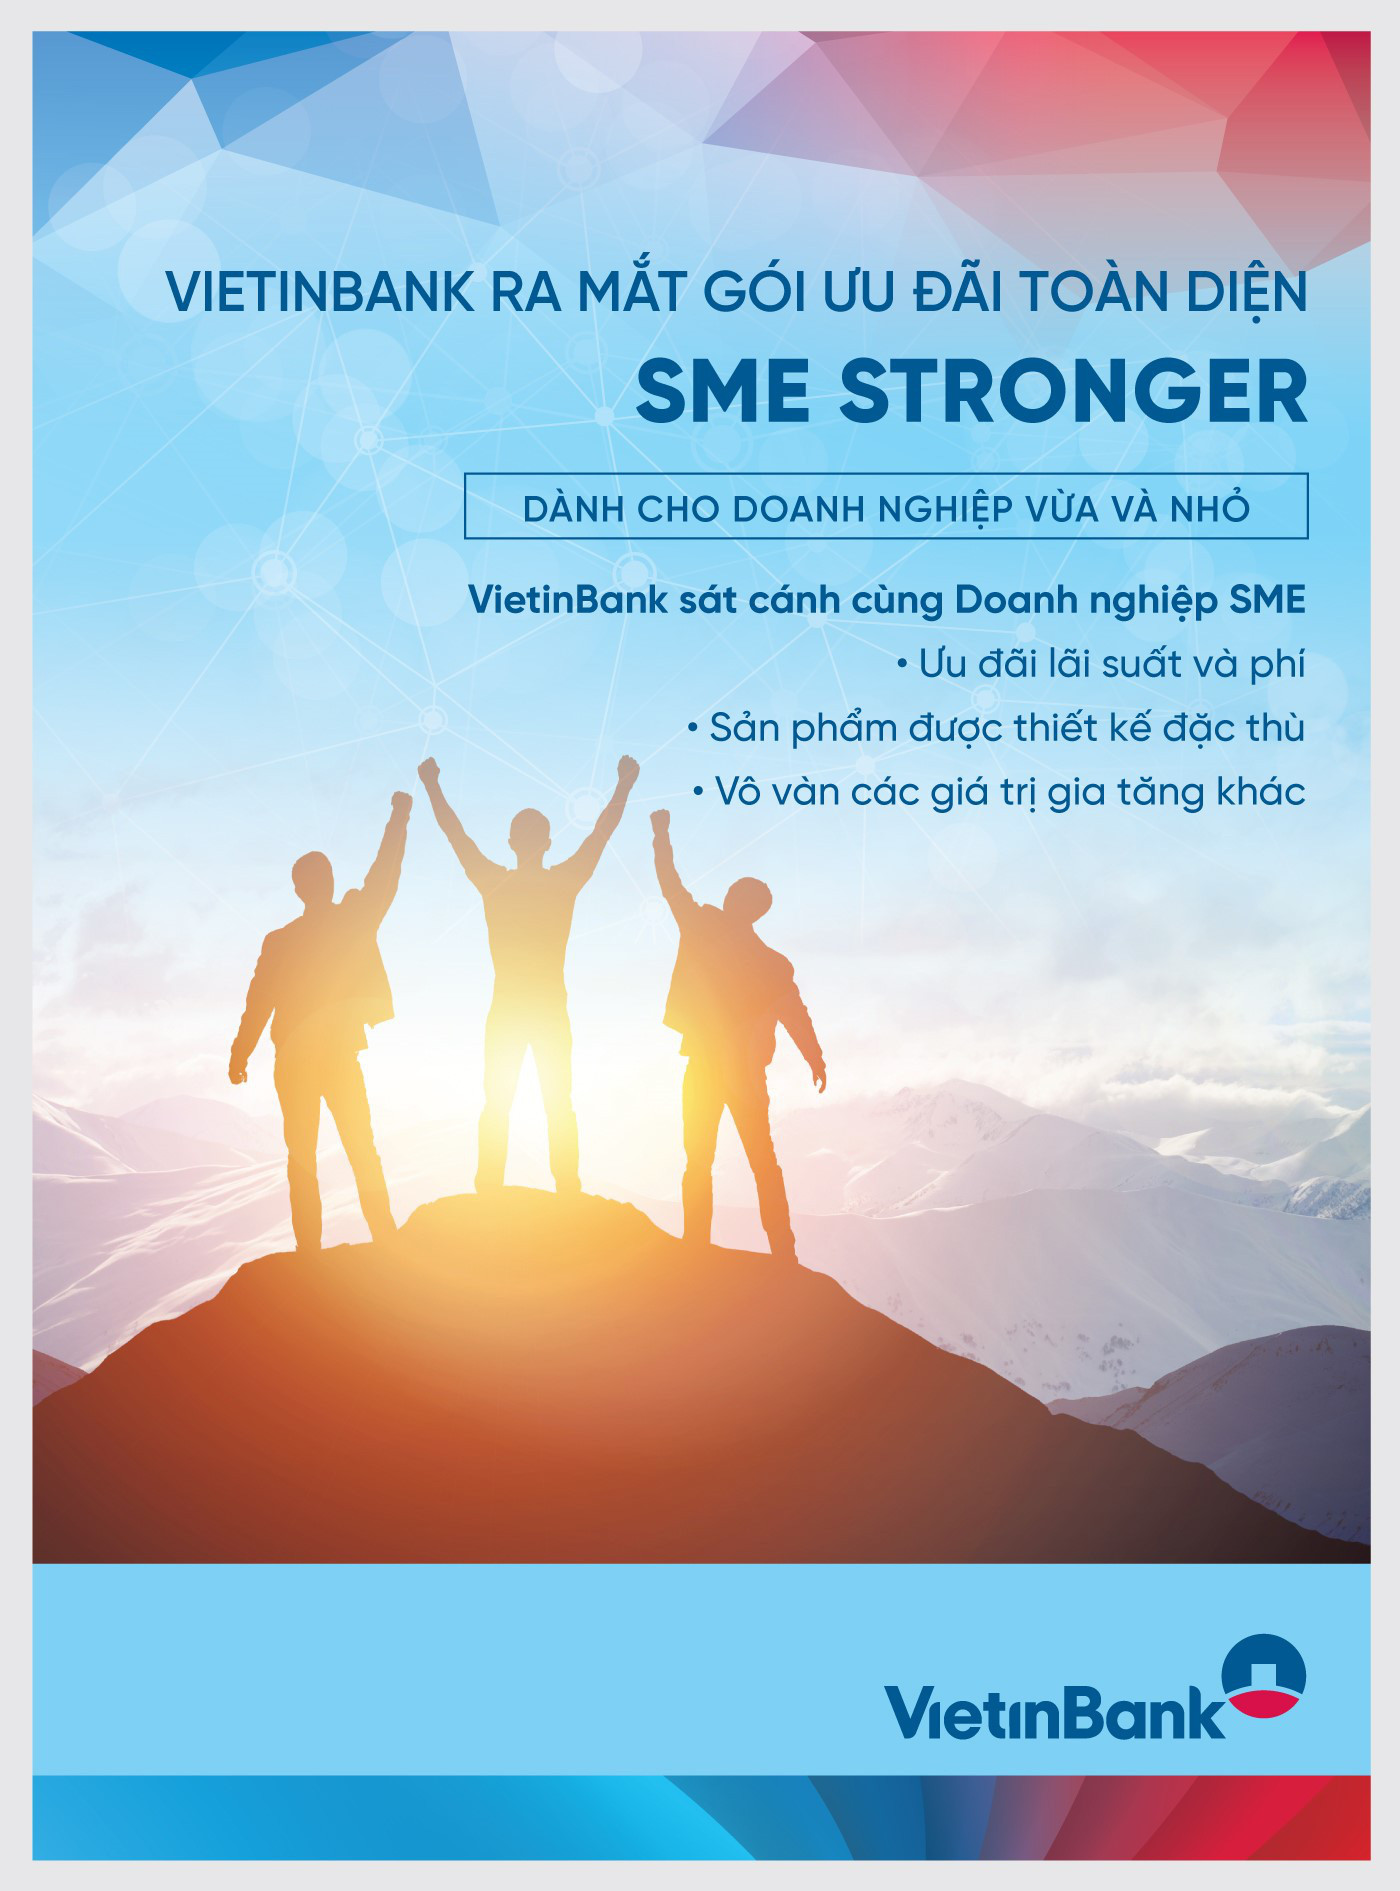 VietinBank SME Stronger: Gói ưu đãi toàn diện cho phân khúc khách hàng SME - Ảnh 1.